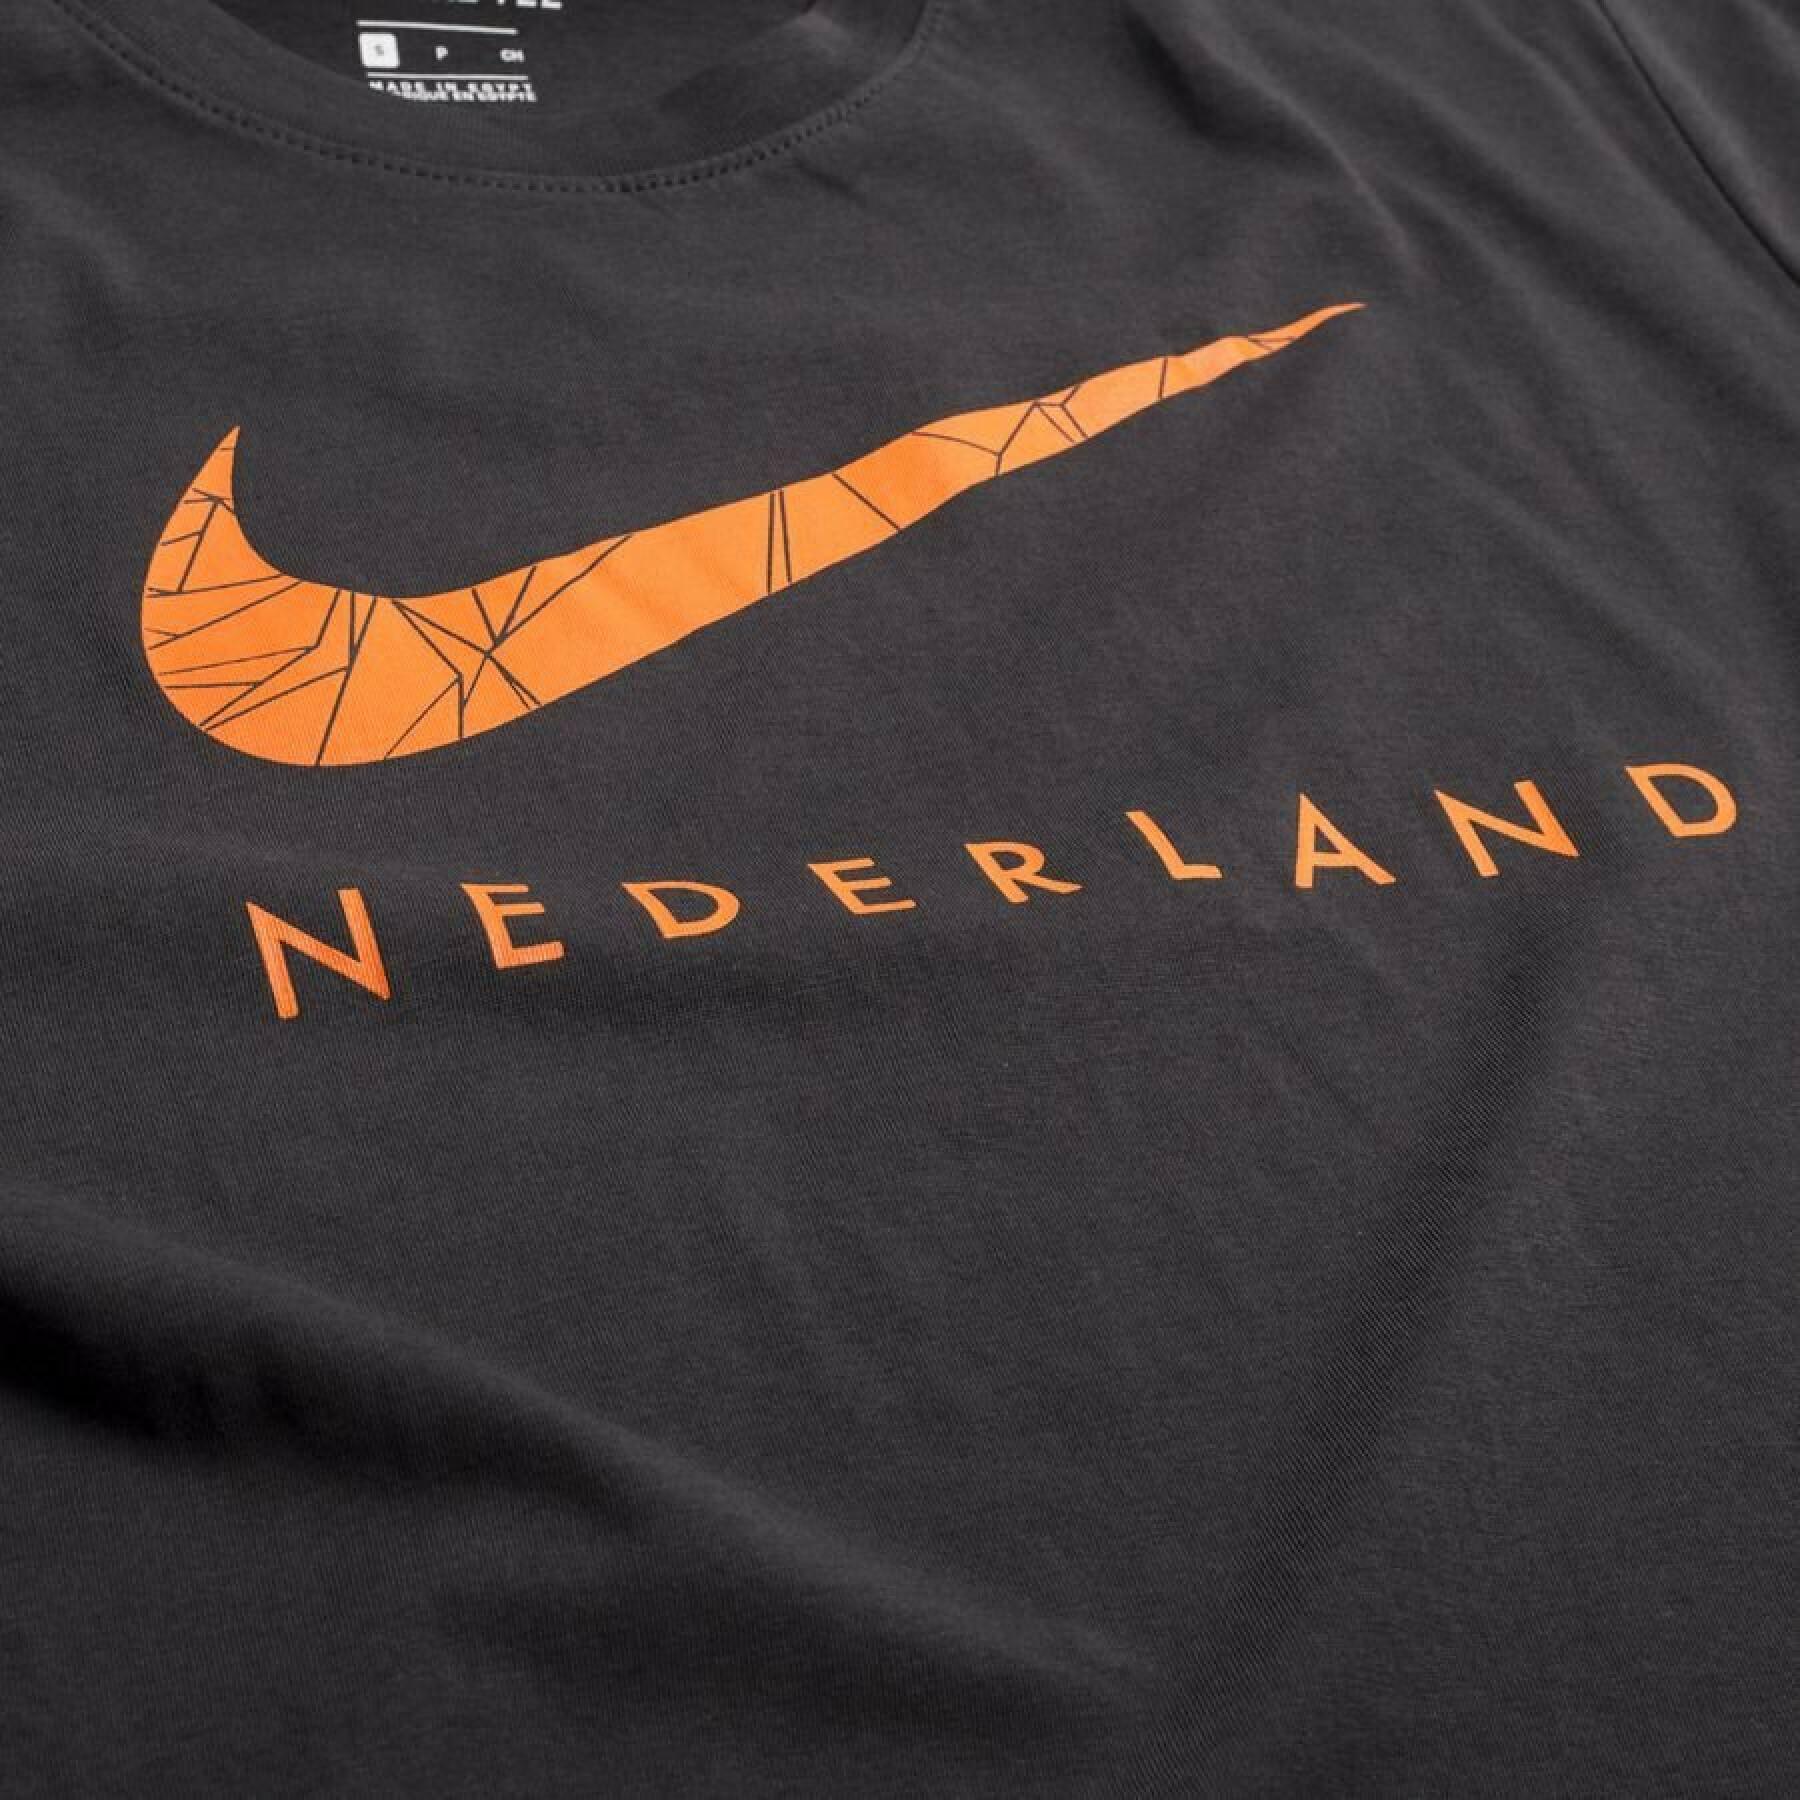 Camiseta Pays-Bas Ground